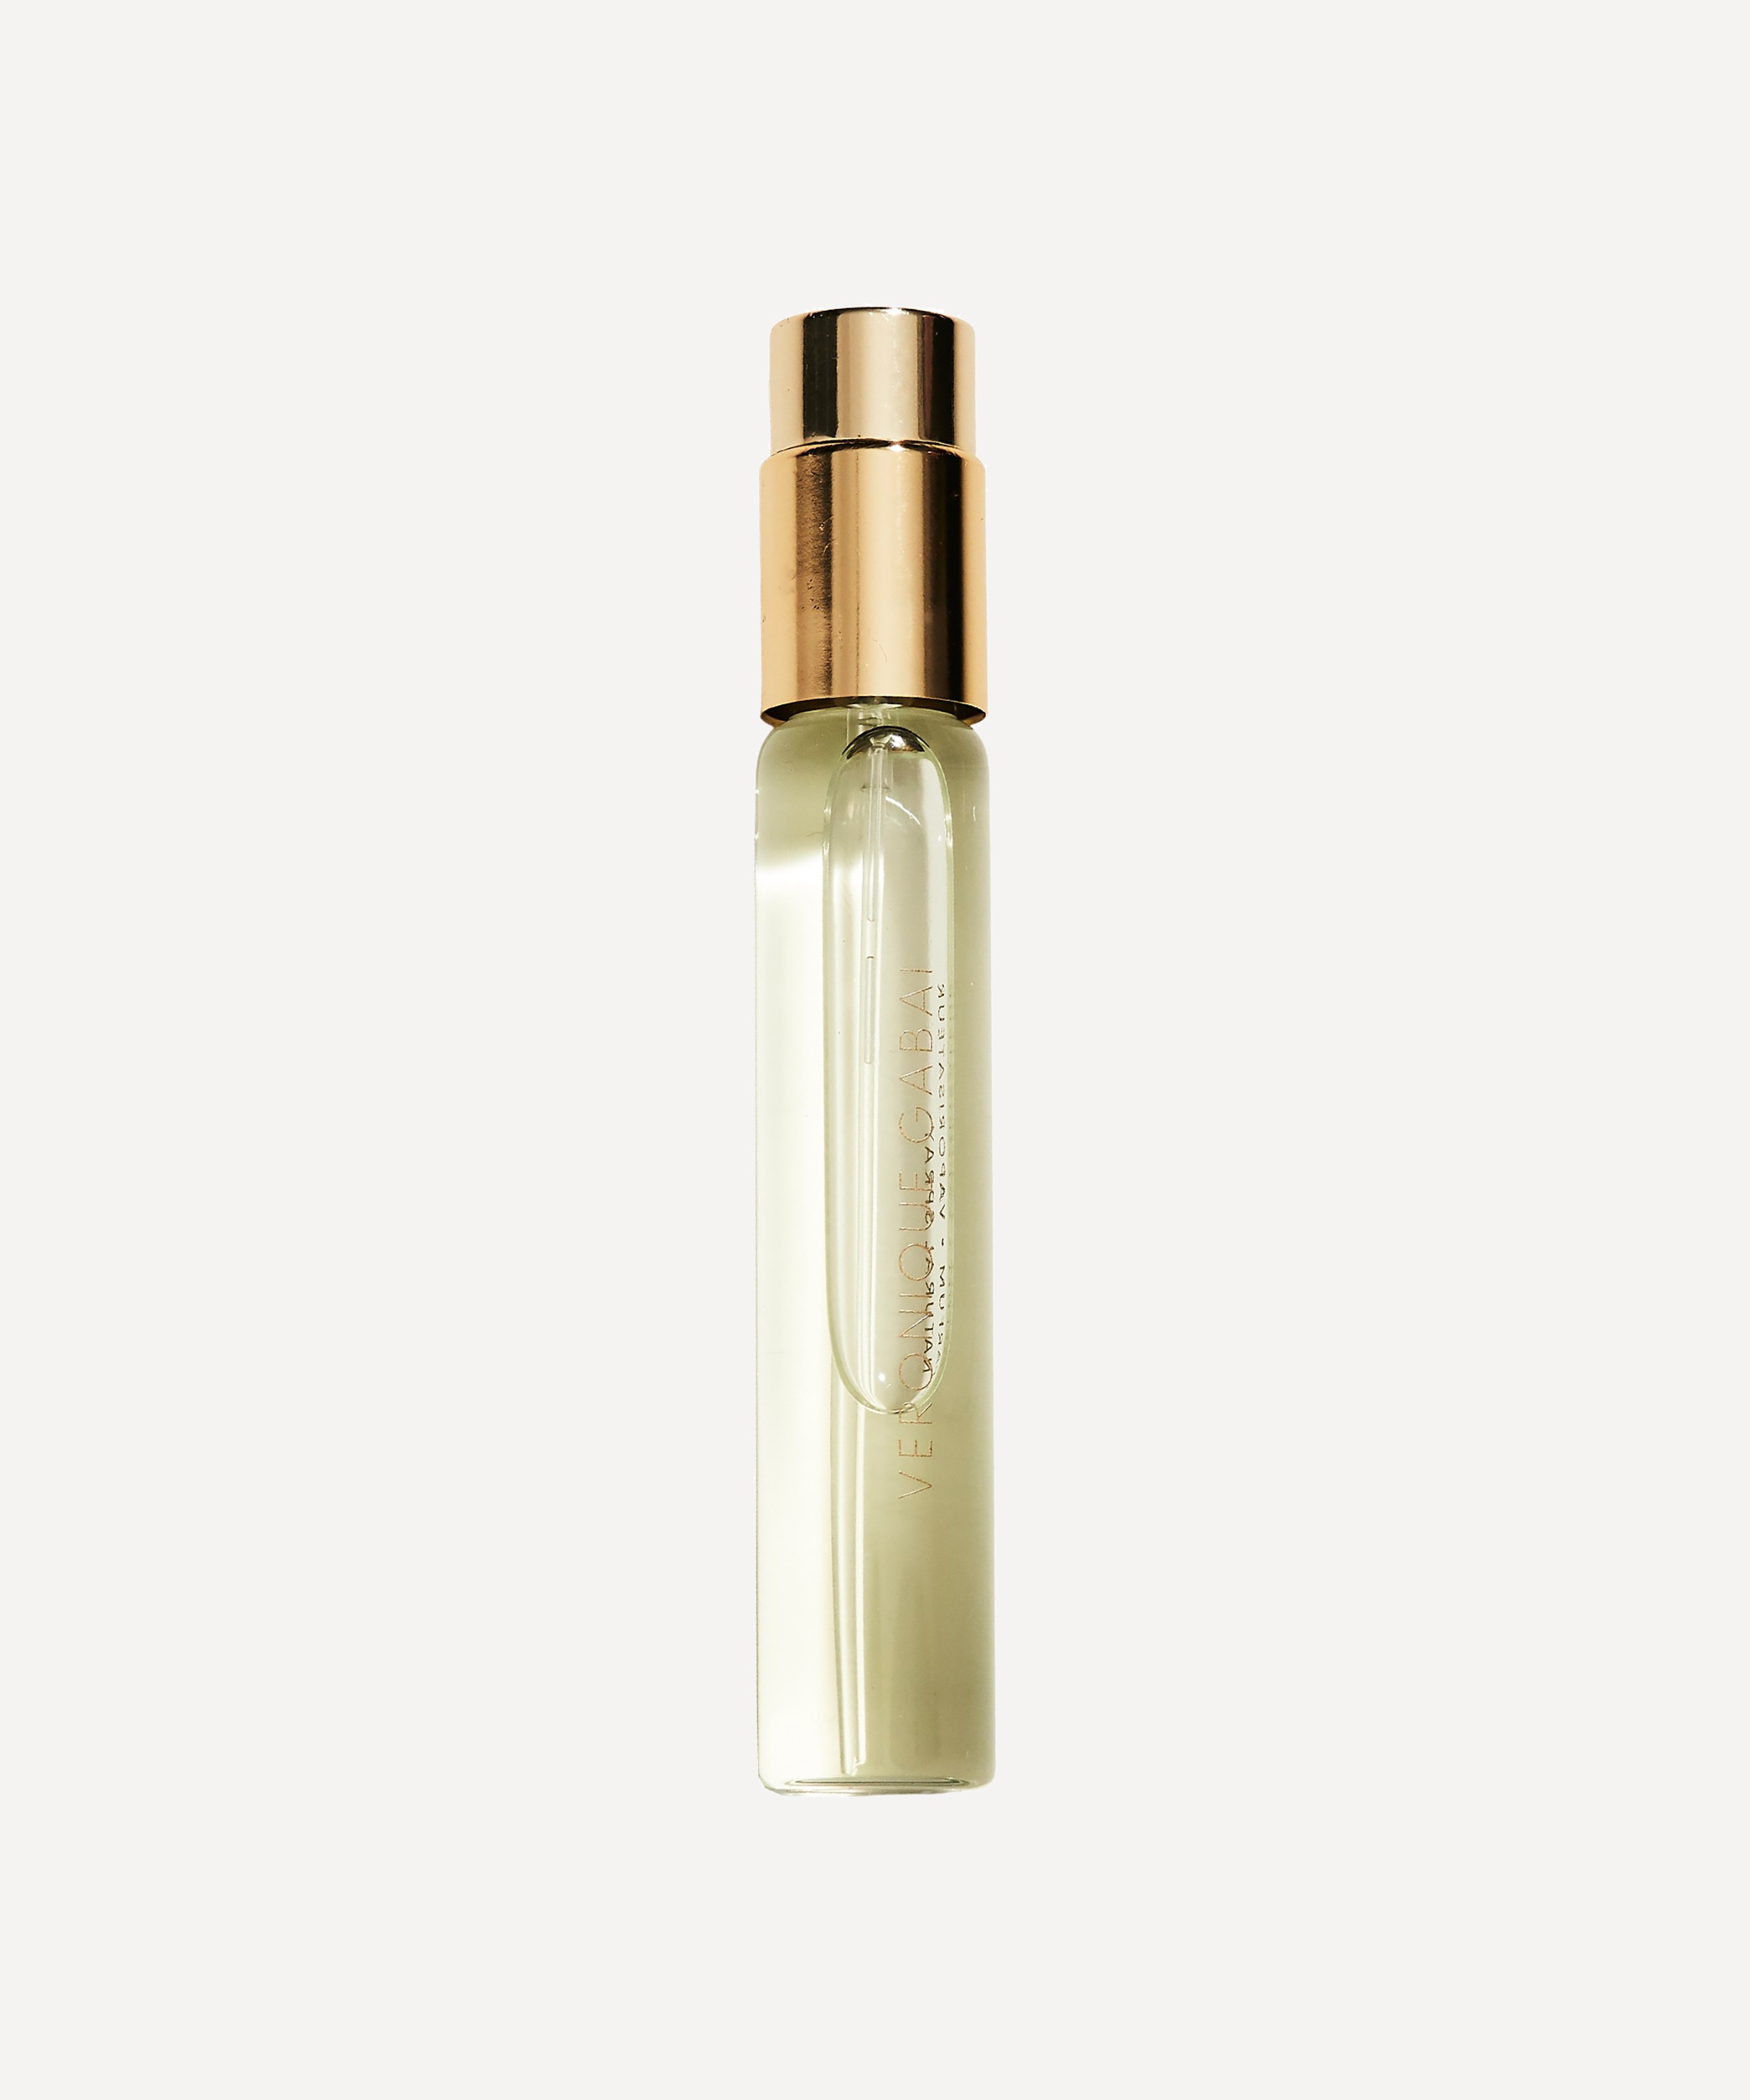 Veronique Gabai - Eau De La Nuit Booster Eau de Parfum Travel Spray 10ml